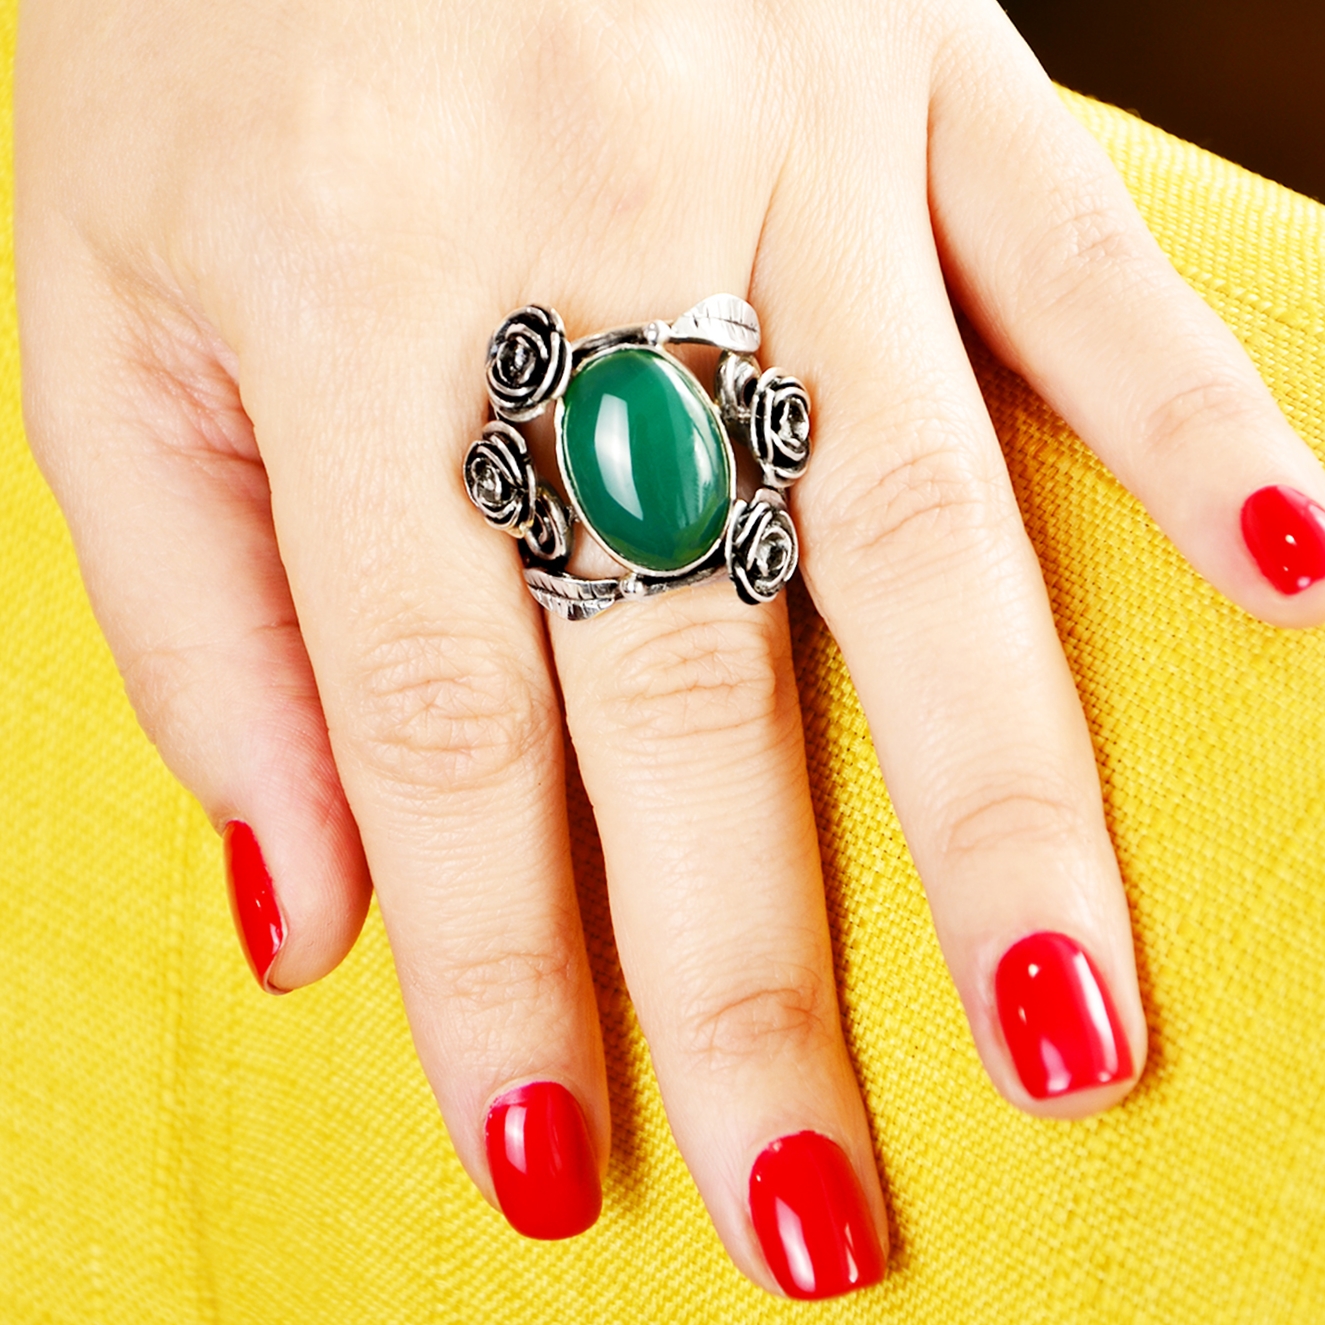 Inel din argint cu flori in jurul cabosonului din agat verde. Una dintre cele mai cunoscute pietre semipretioase. inel pe model.